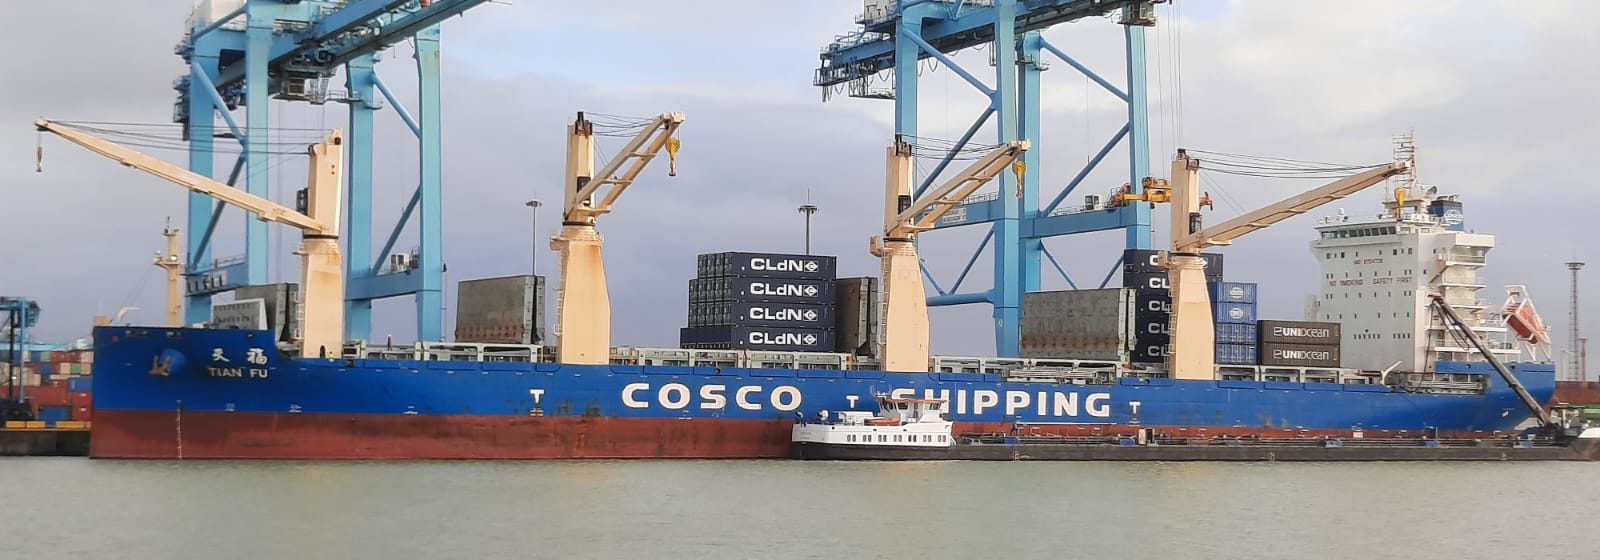 'Tian Fu' levert nieuwe containers CLdN in Zeebrugge